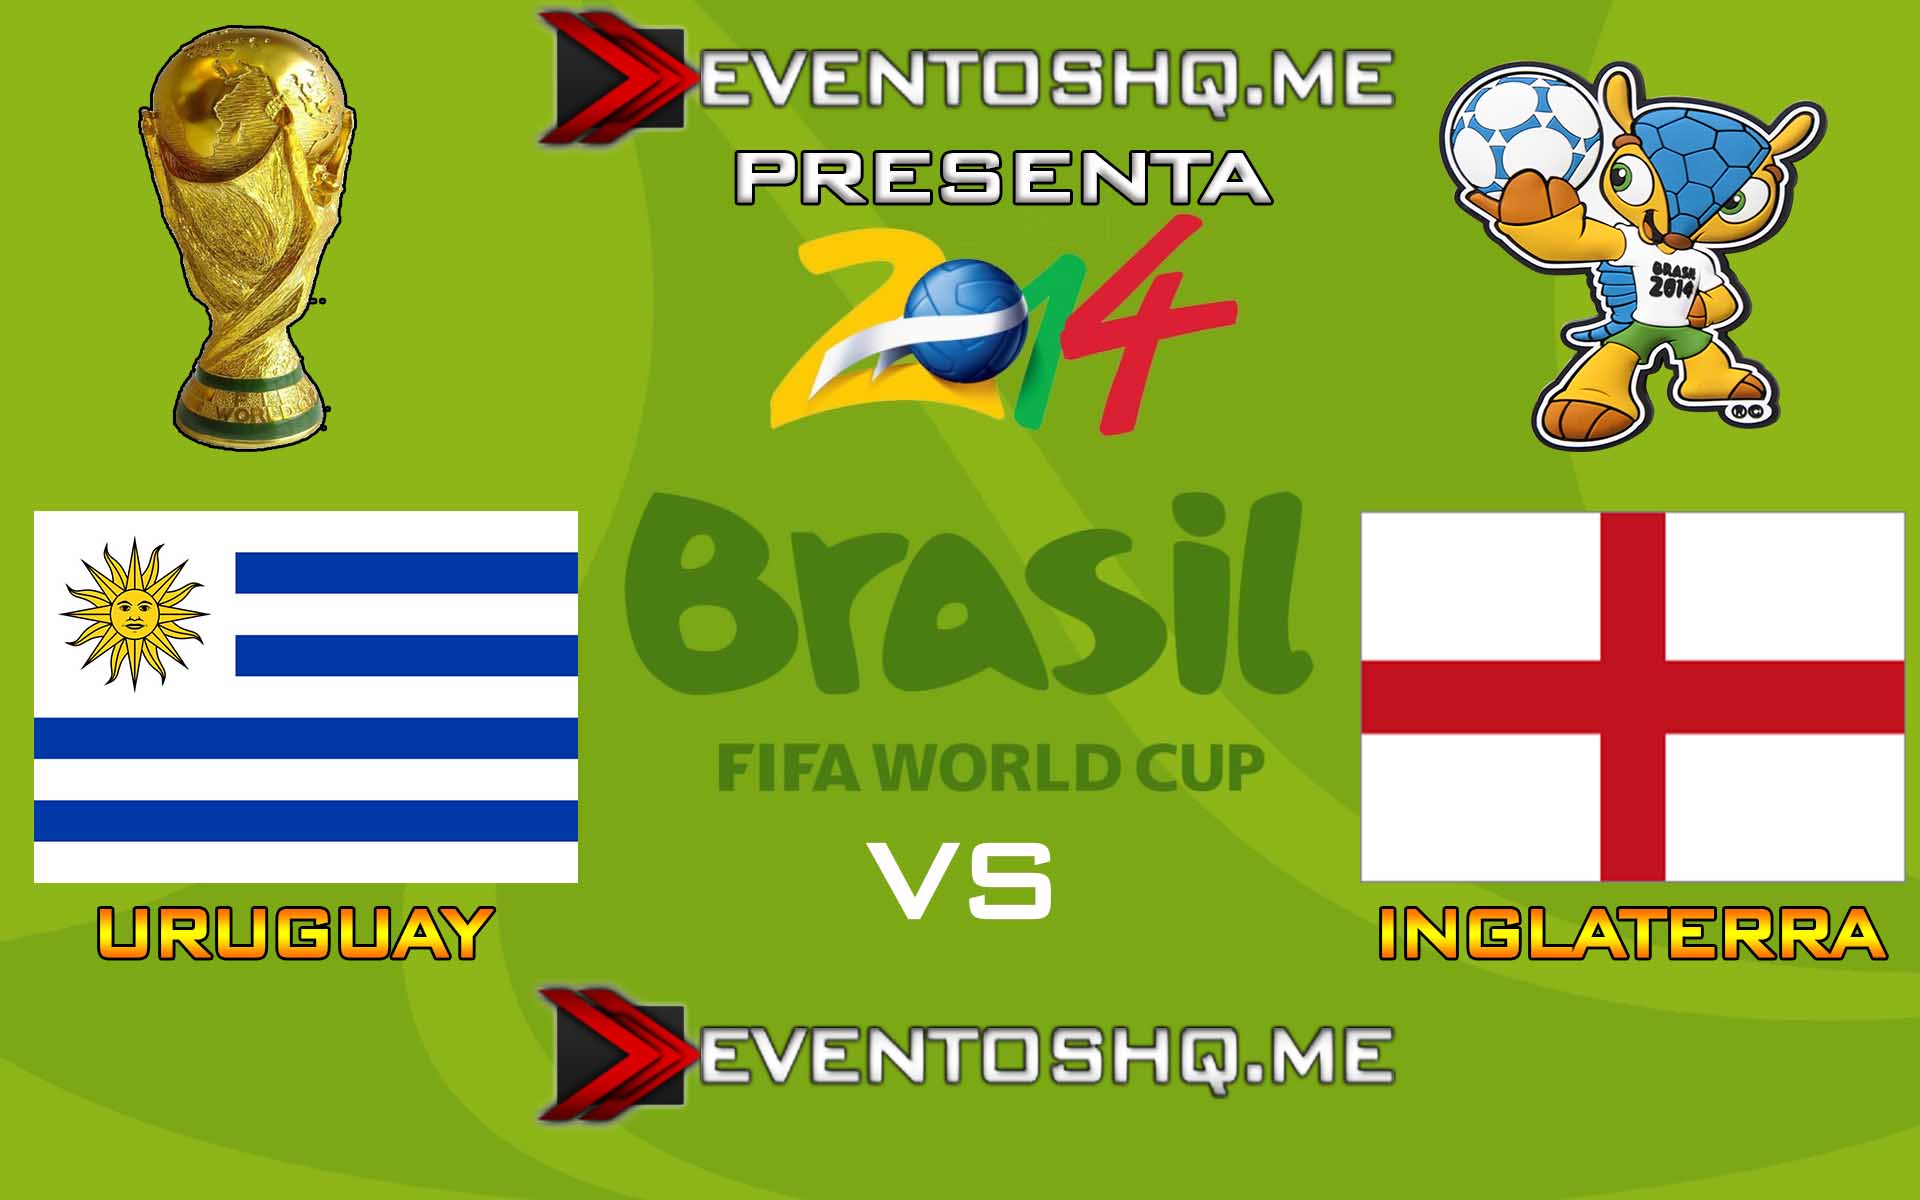 Ver en Vivo Uruguay vs Inglaterra Mundial Brasil 2014 www.eventoshq.me